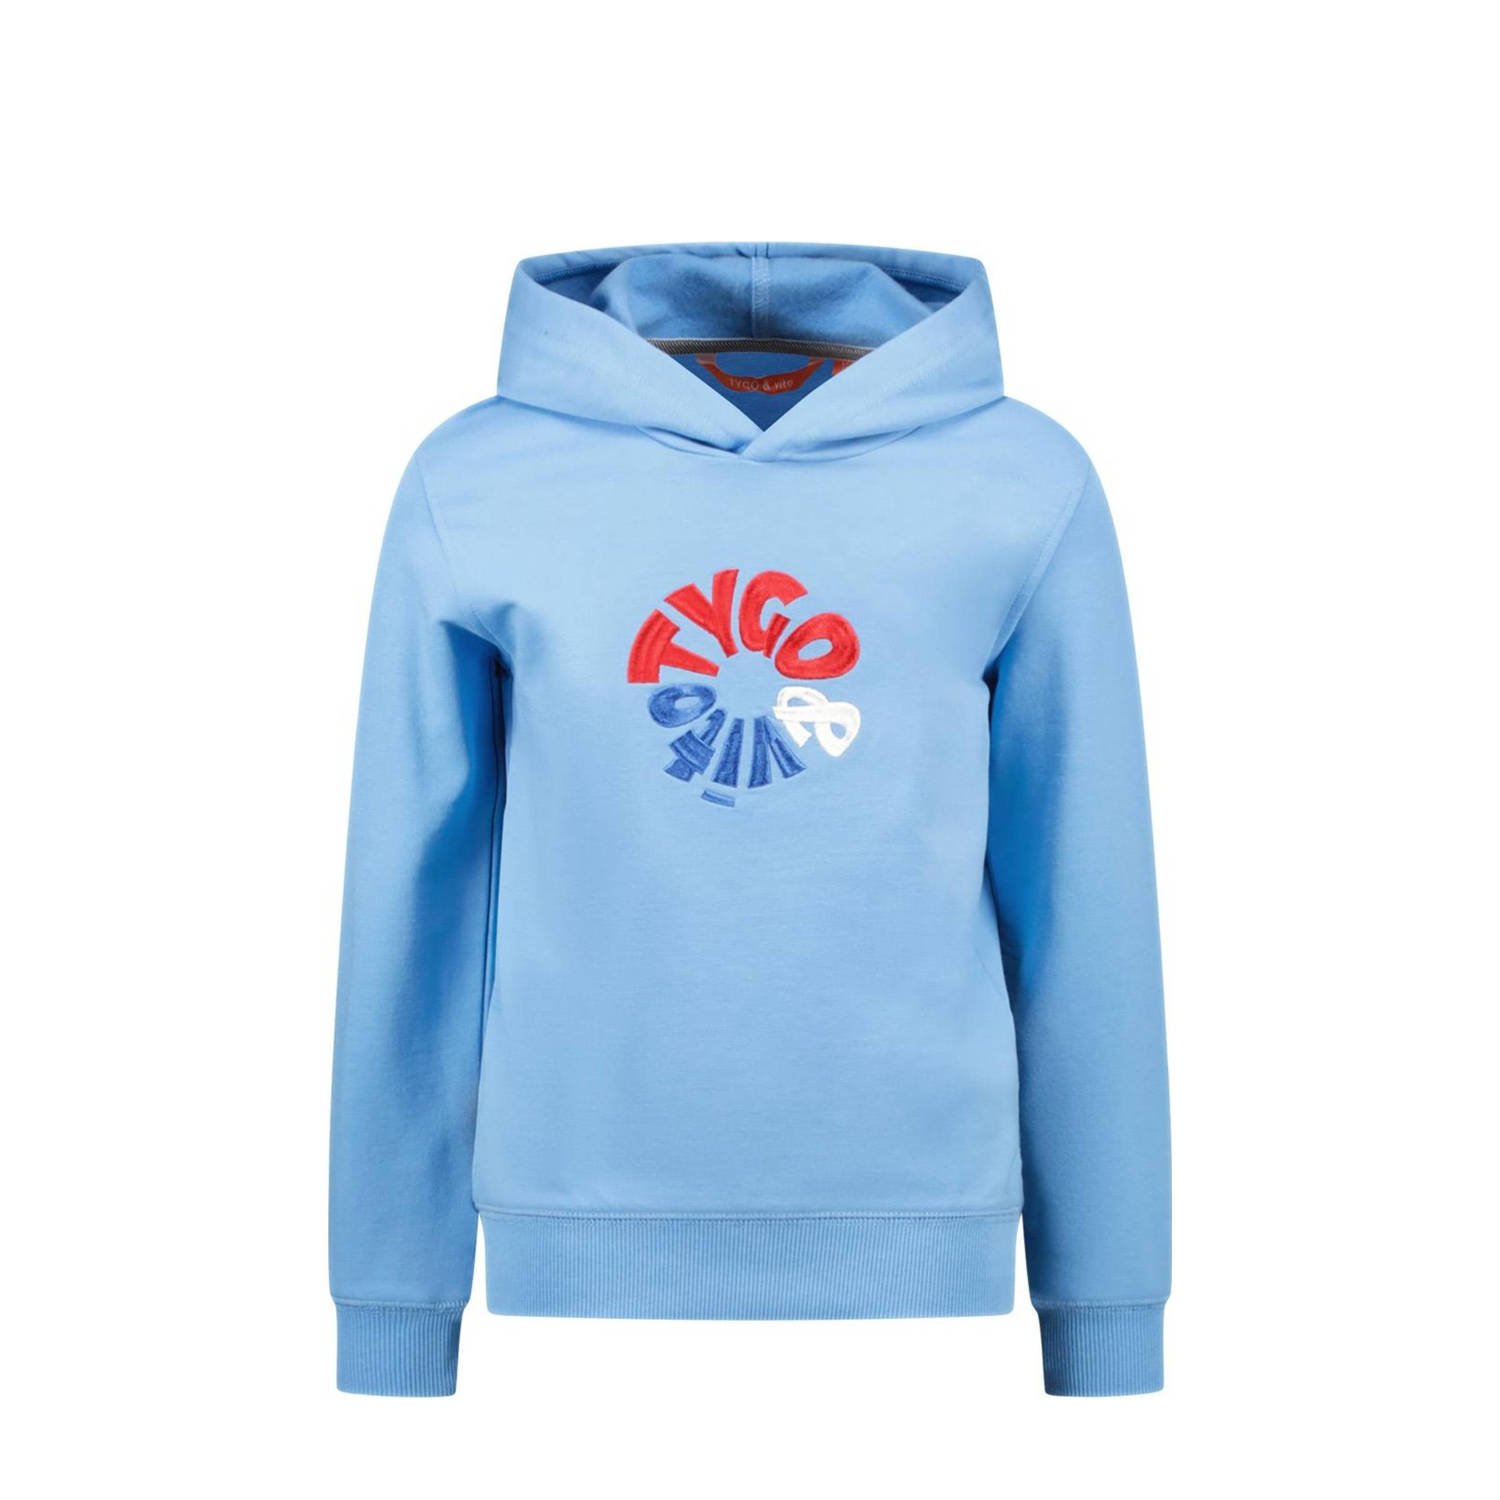 TYGO & vito hoodie Hamza met logo lichtblauw multi